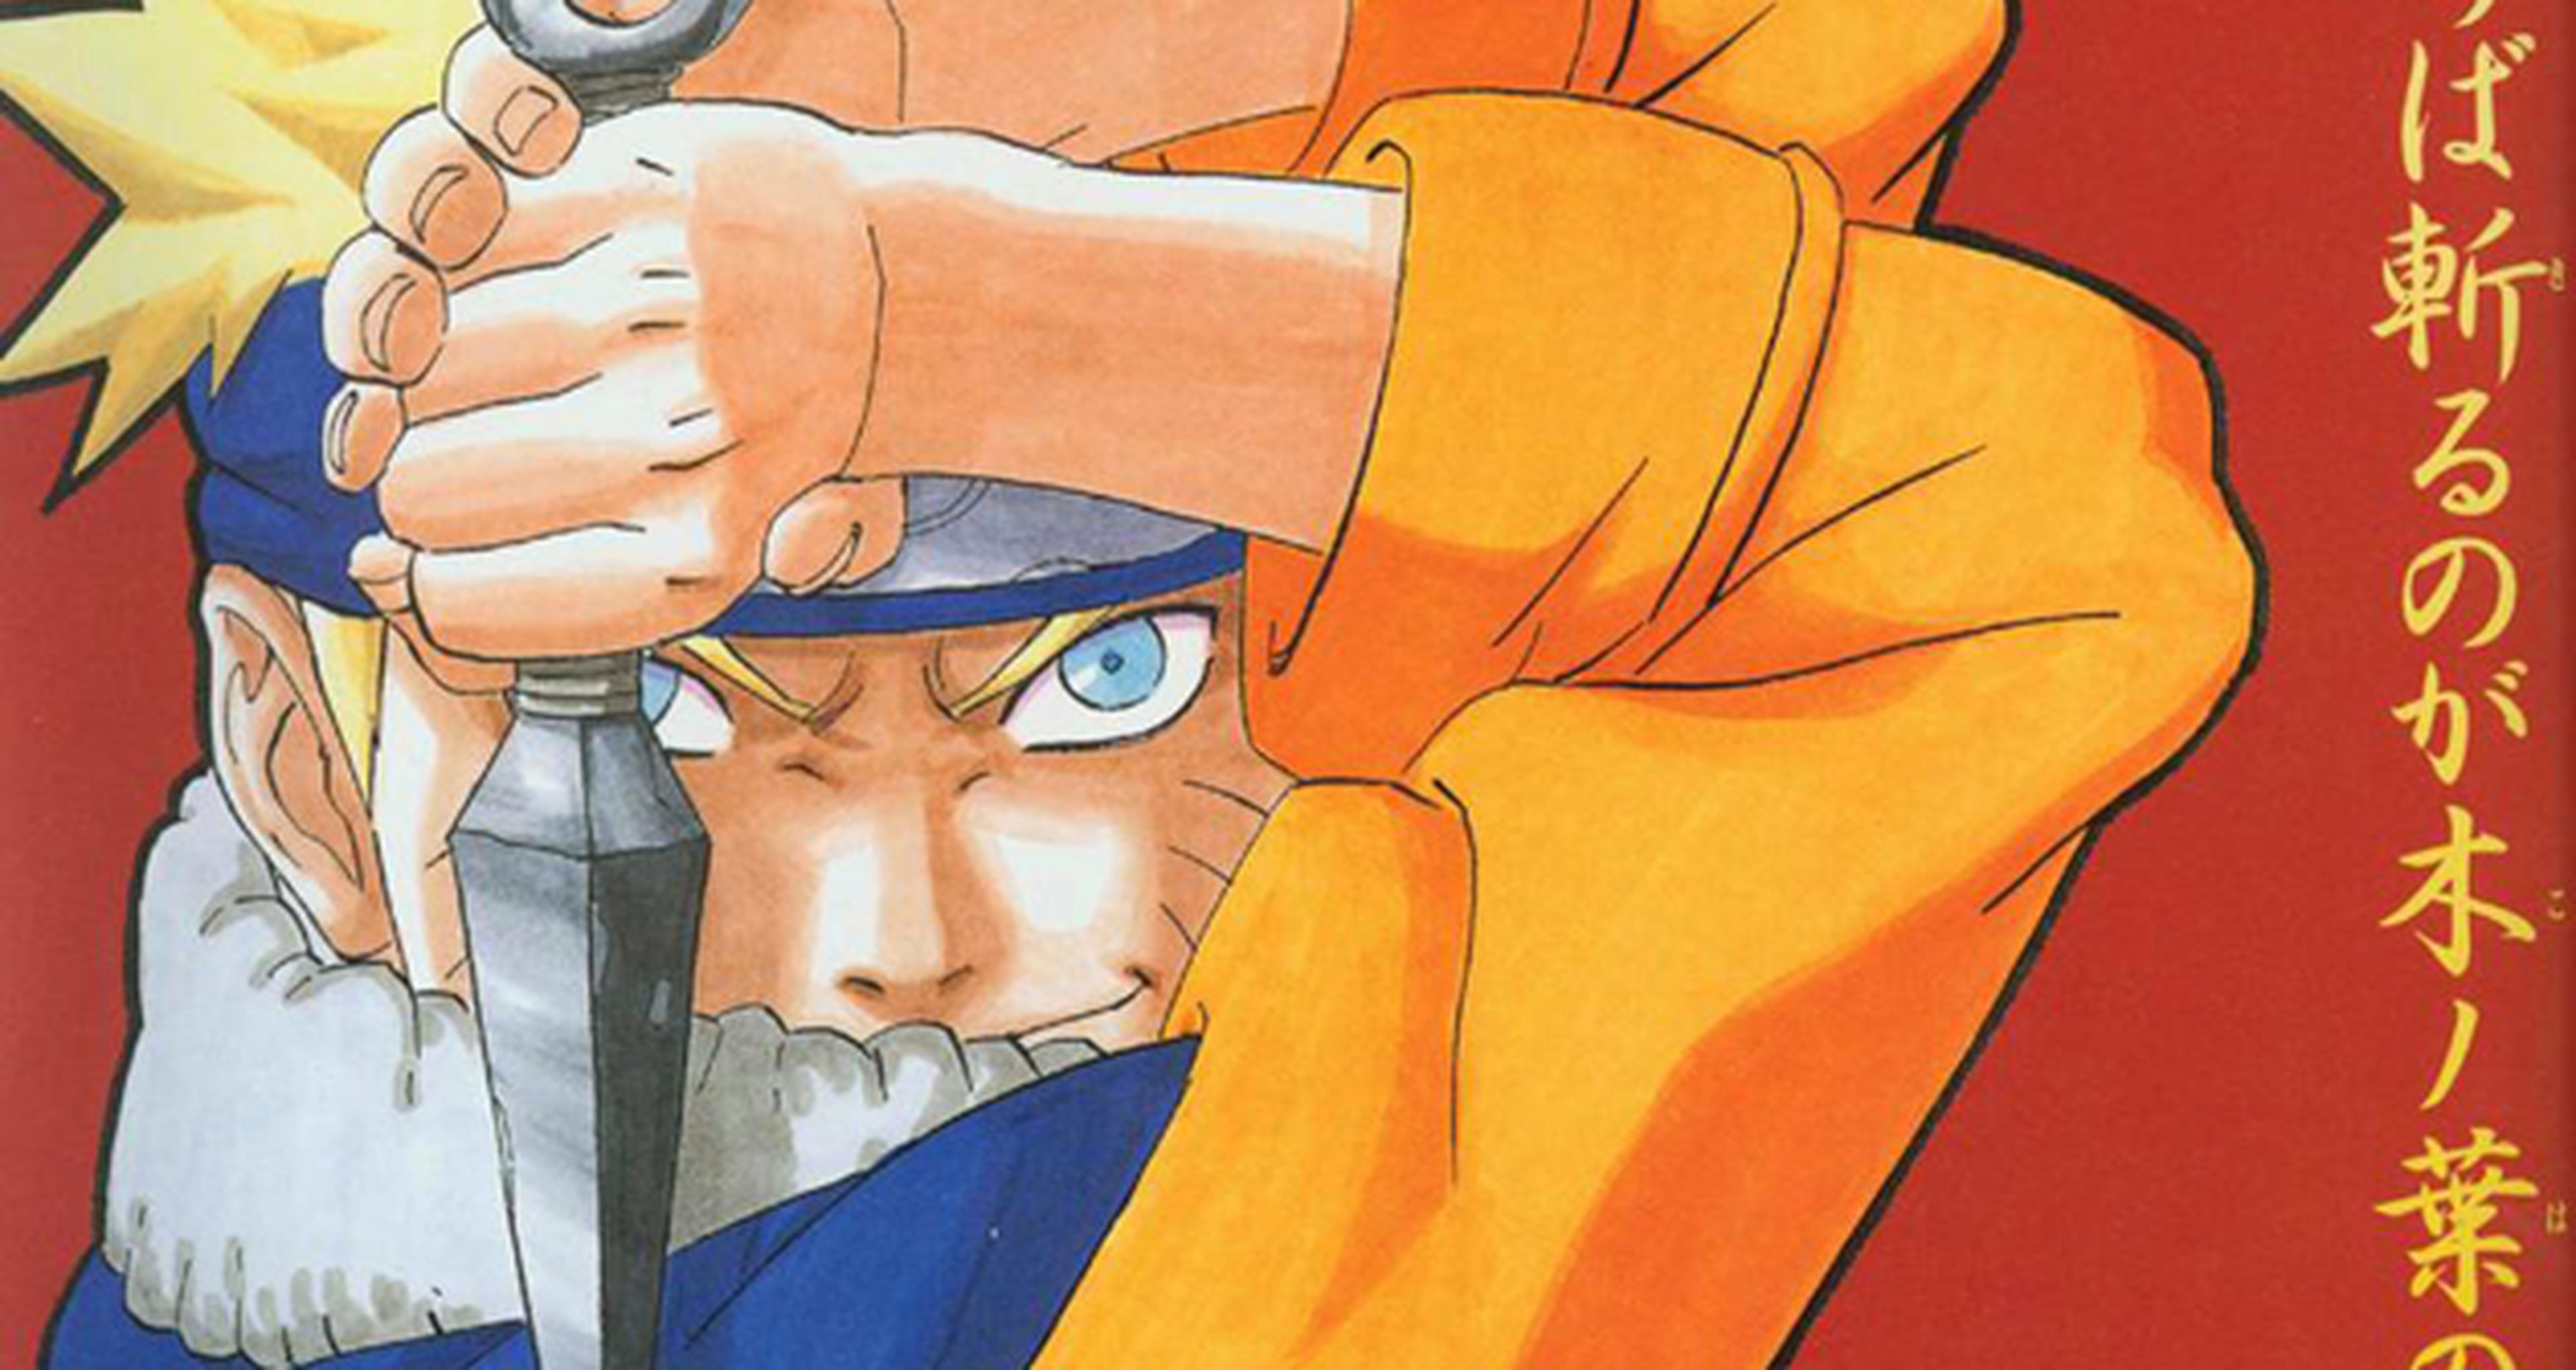 Anime: Todo lo que tienes que saber sobre Naruto